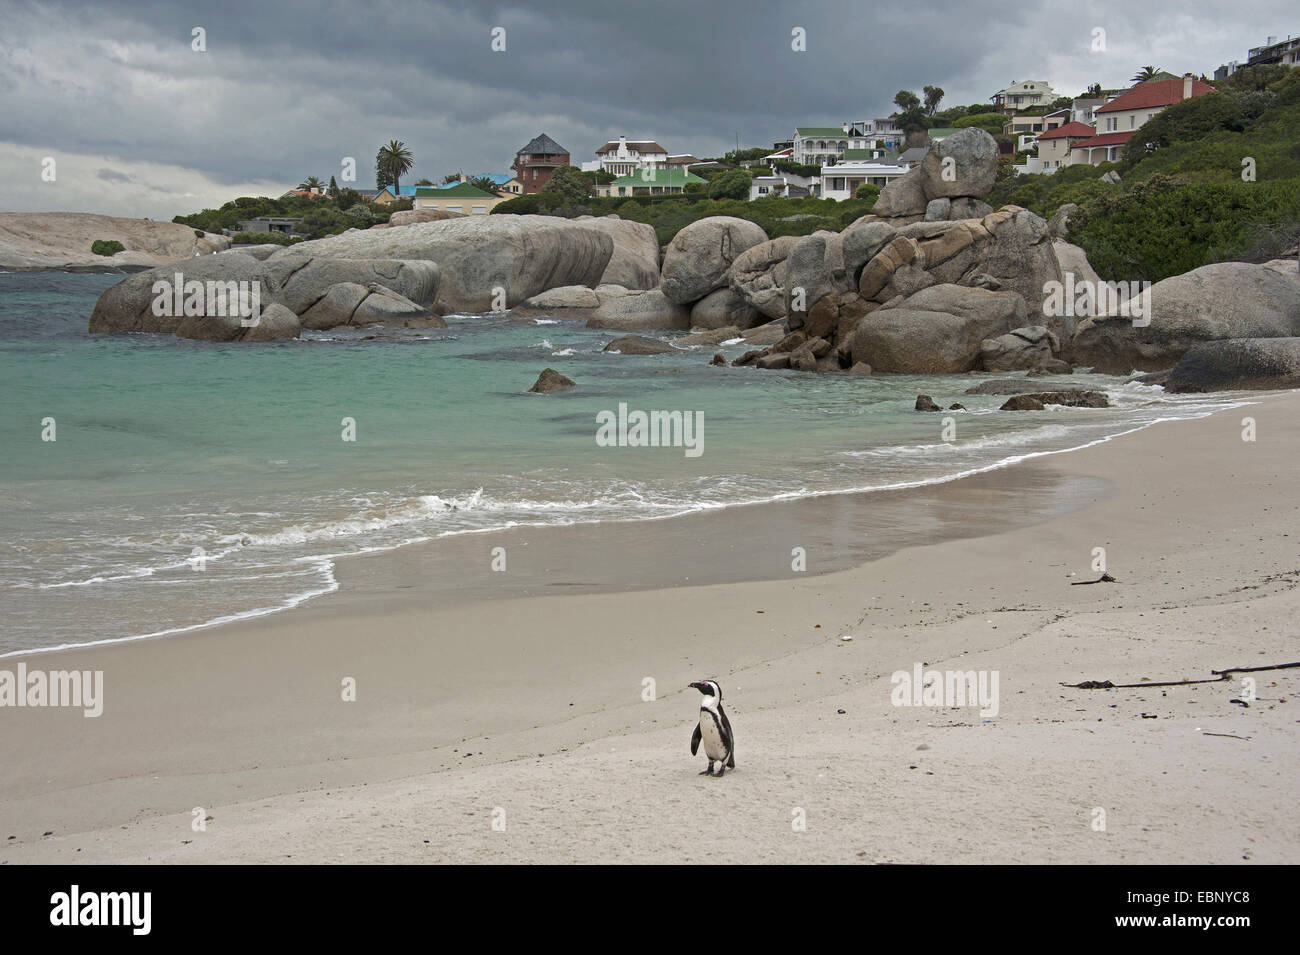 Jackass penguin, manchot, le putois (Spheniscus demersus), oiseau seul debout sur la plage de sable fin de la baie de la plage de Boulders, Afrique du Sud, Western Cape, Simons Town Banque D'Images